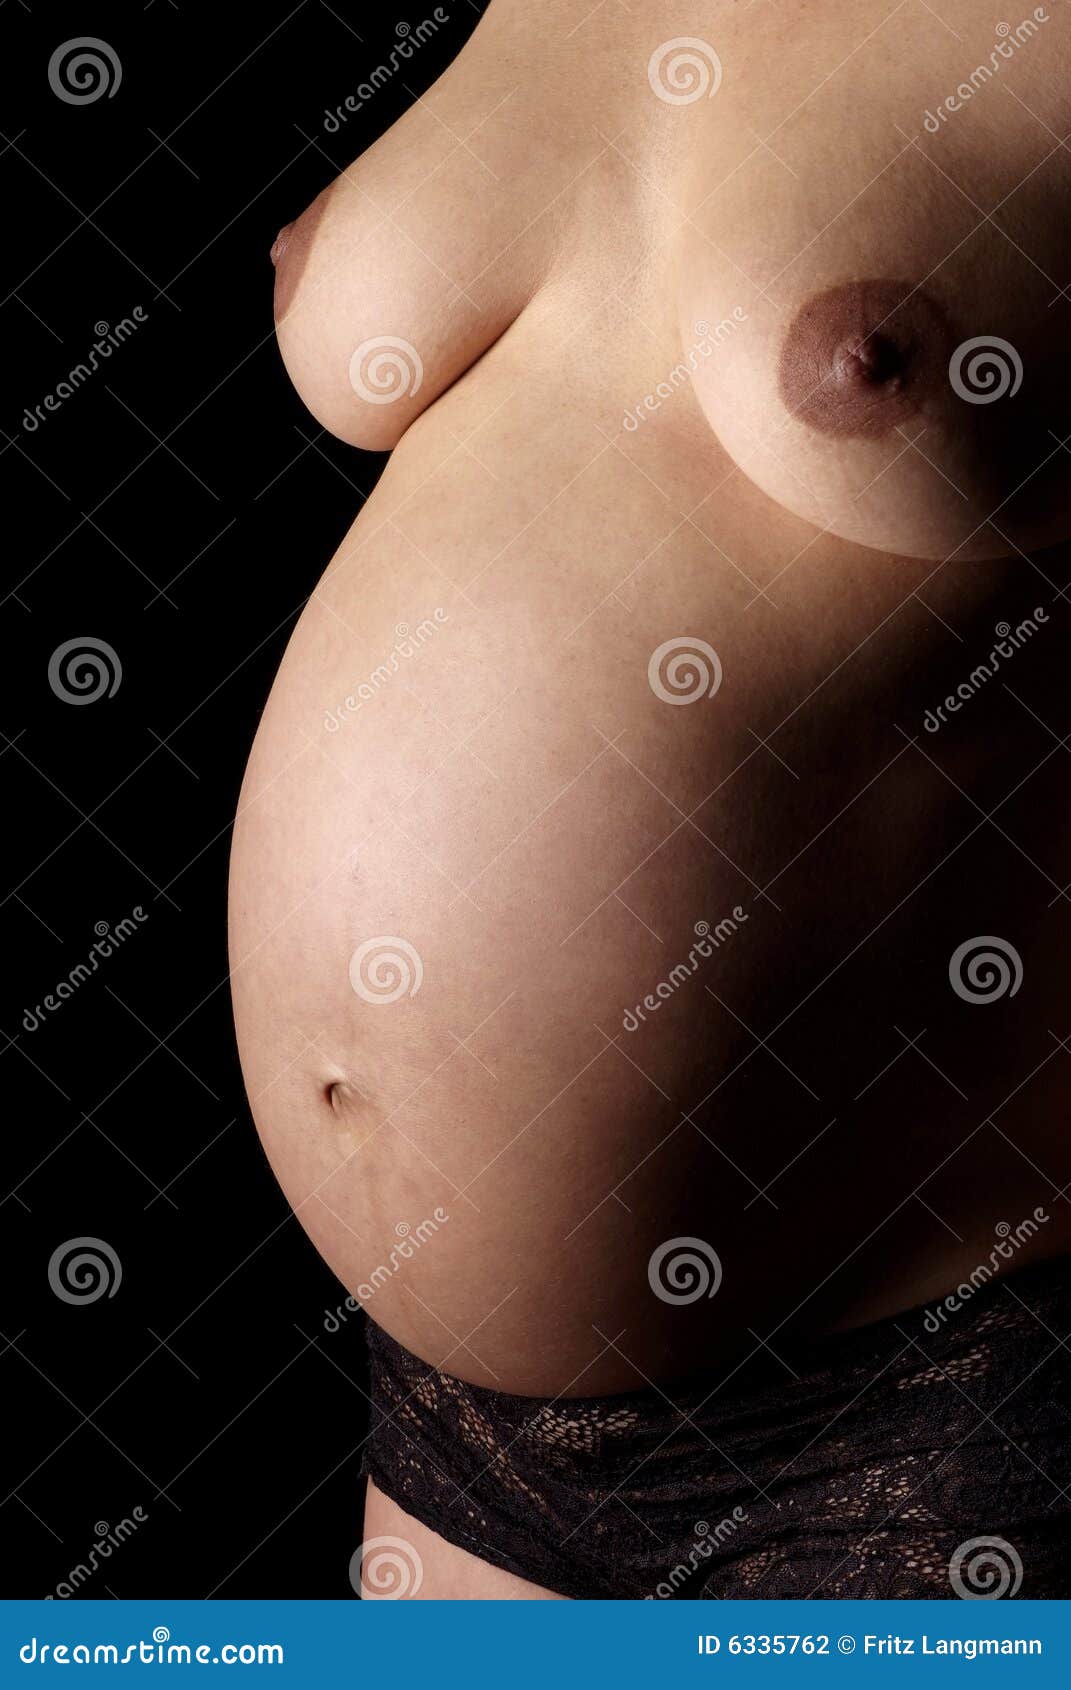 Tits pregnant